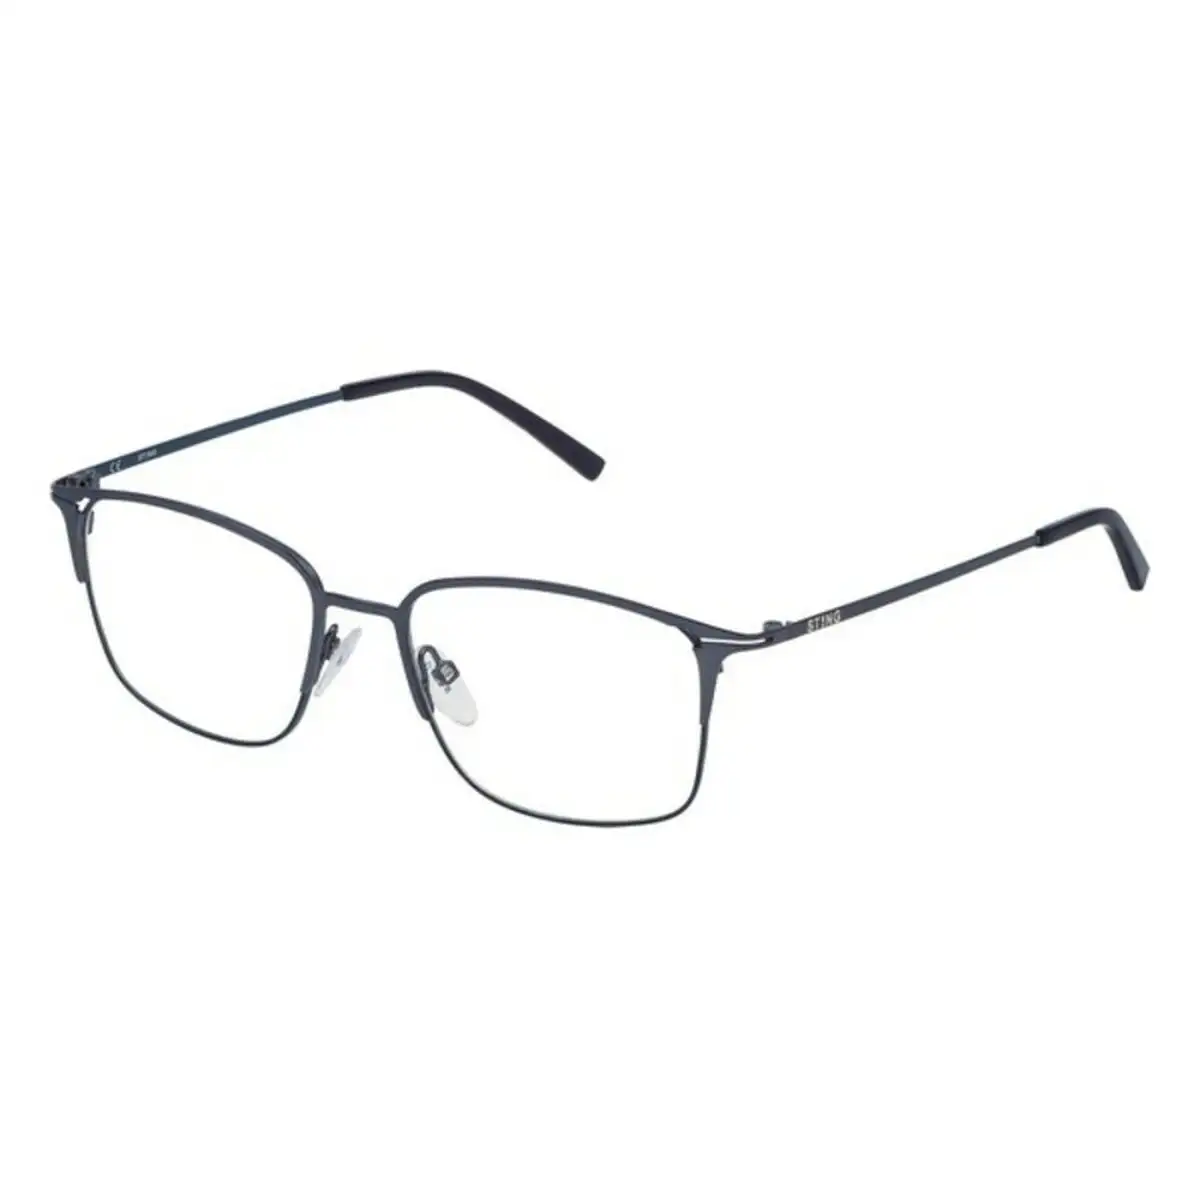 Monture de lunettes homme sting vst062510i09 bleu o 51 mm _2583. Bienvenue chez DIAYTAR SENEGAL - Où le Shopping Devient un Plaisir. Découvrez notre boutique en ligne et trouvez des trésors qui égaieront chaque jour de votre vie.